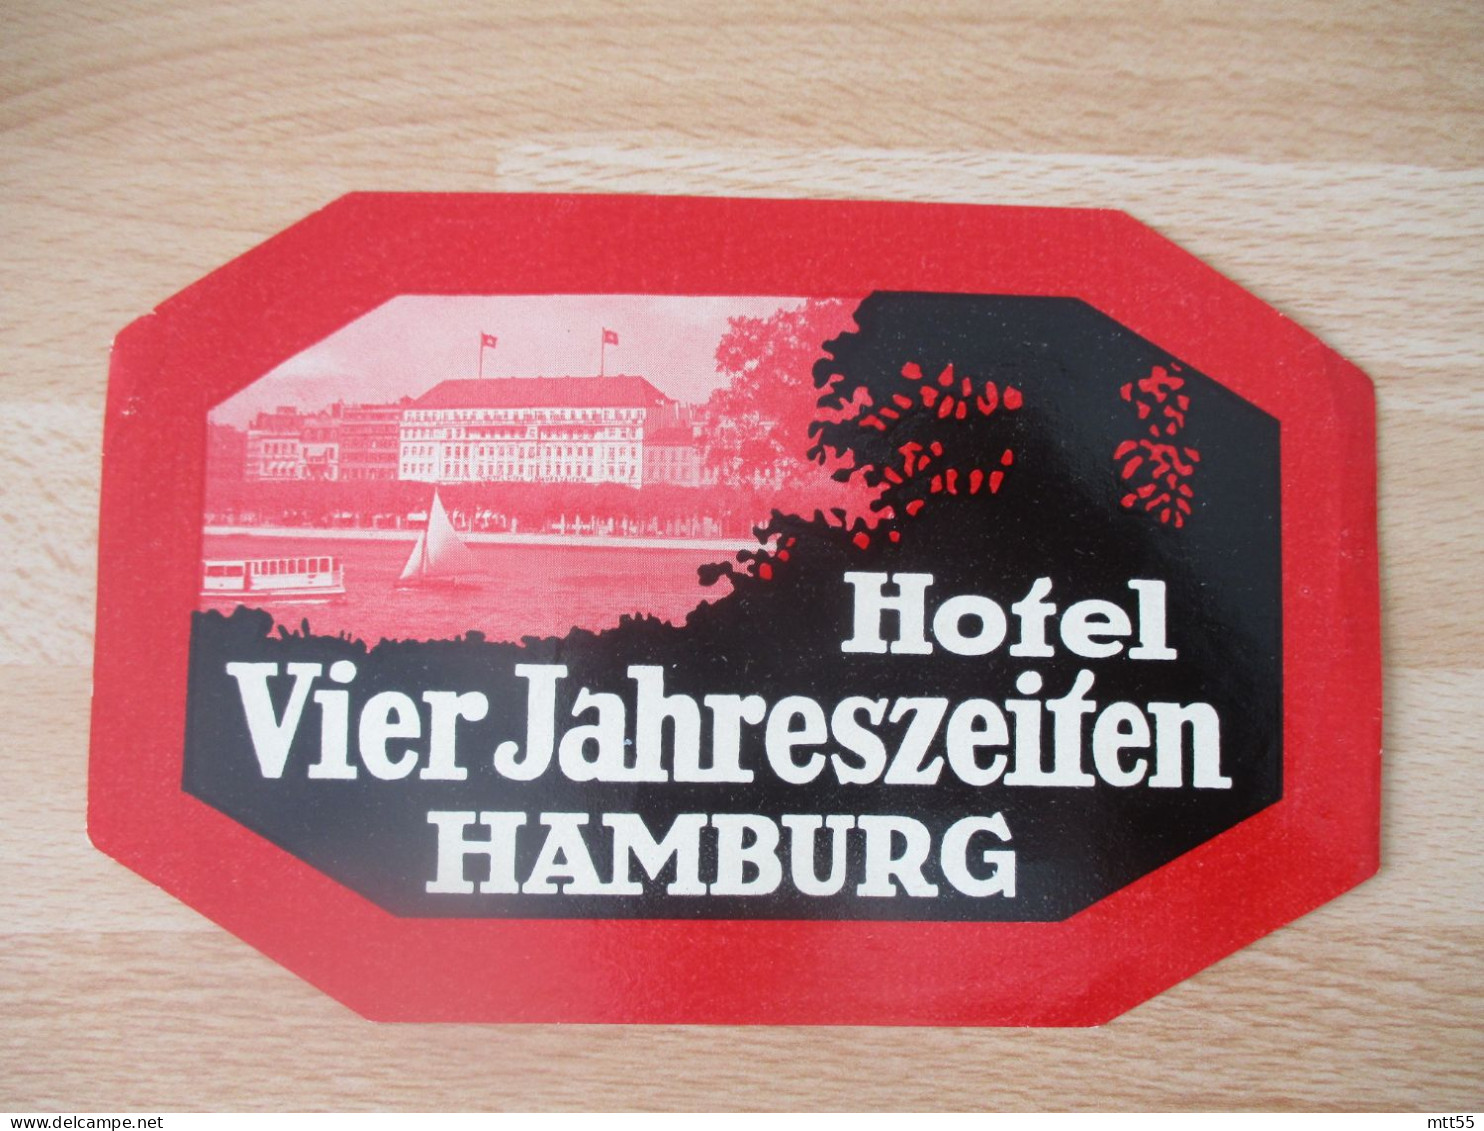 HAMBURG HAMBOURG HOTEL VIER JAHNRESZEIIEN  ETIQUETTE HOTEL - Hotel Labels